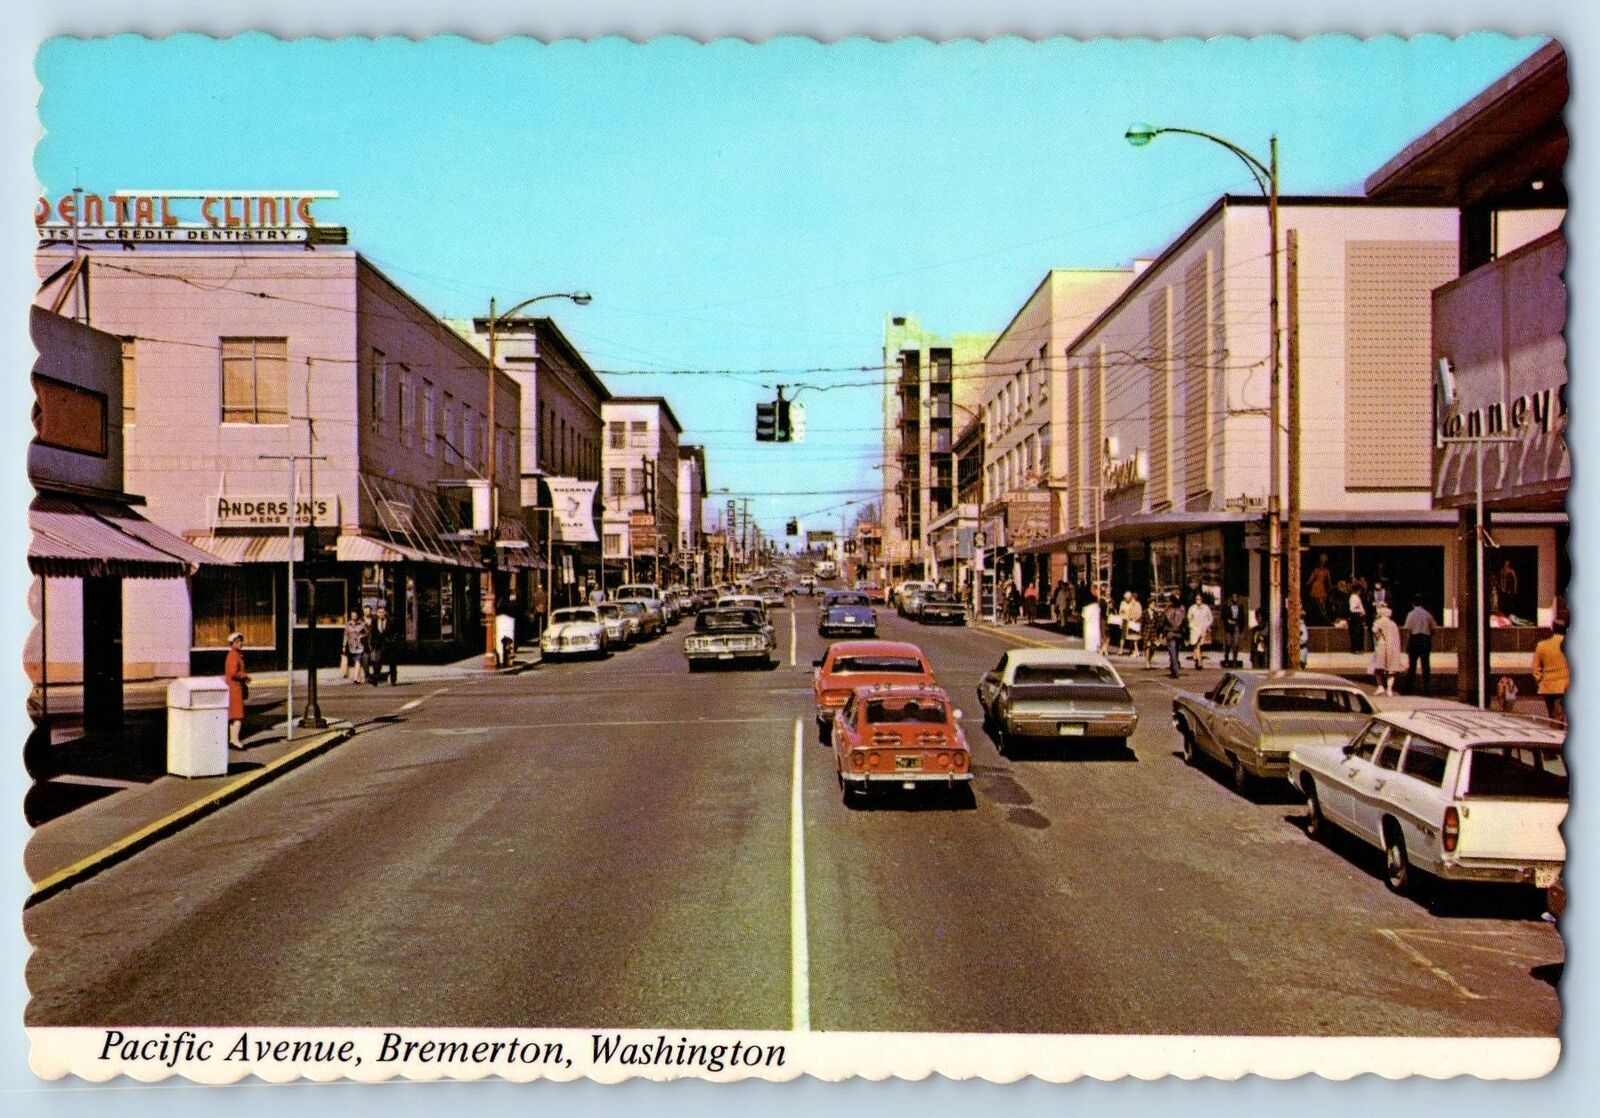 c1950 Pacific Avenue Classic Car Business District Bremerton Washington Postcard